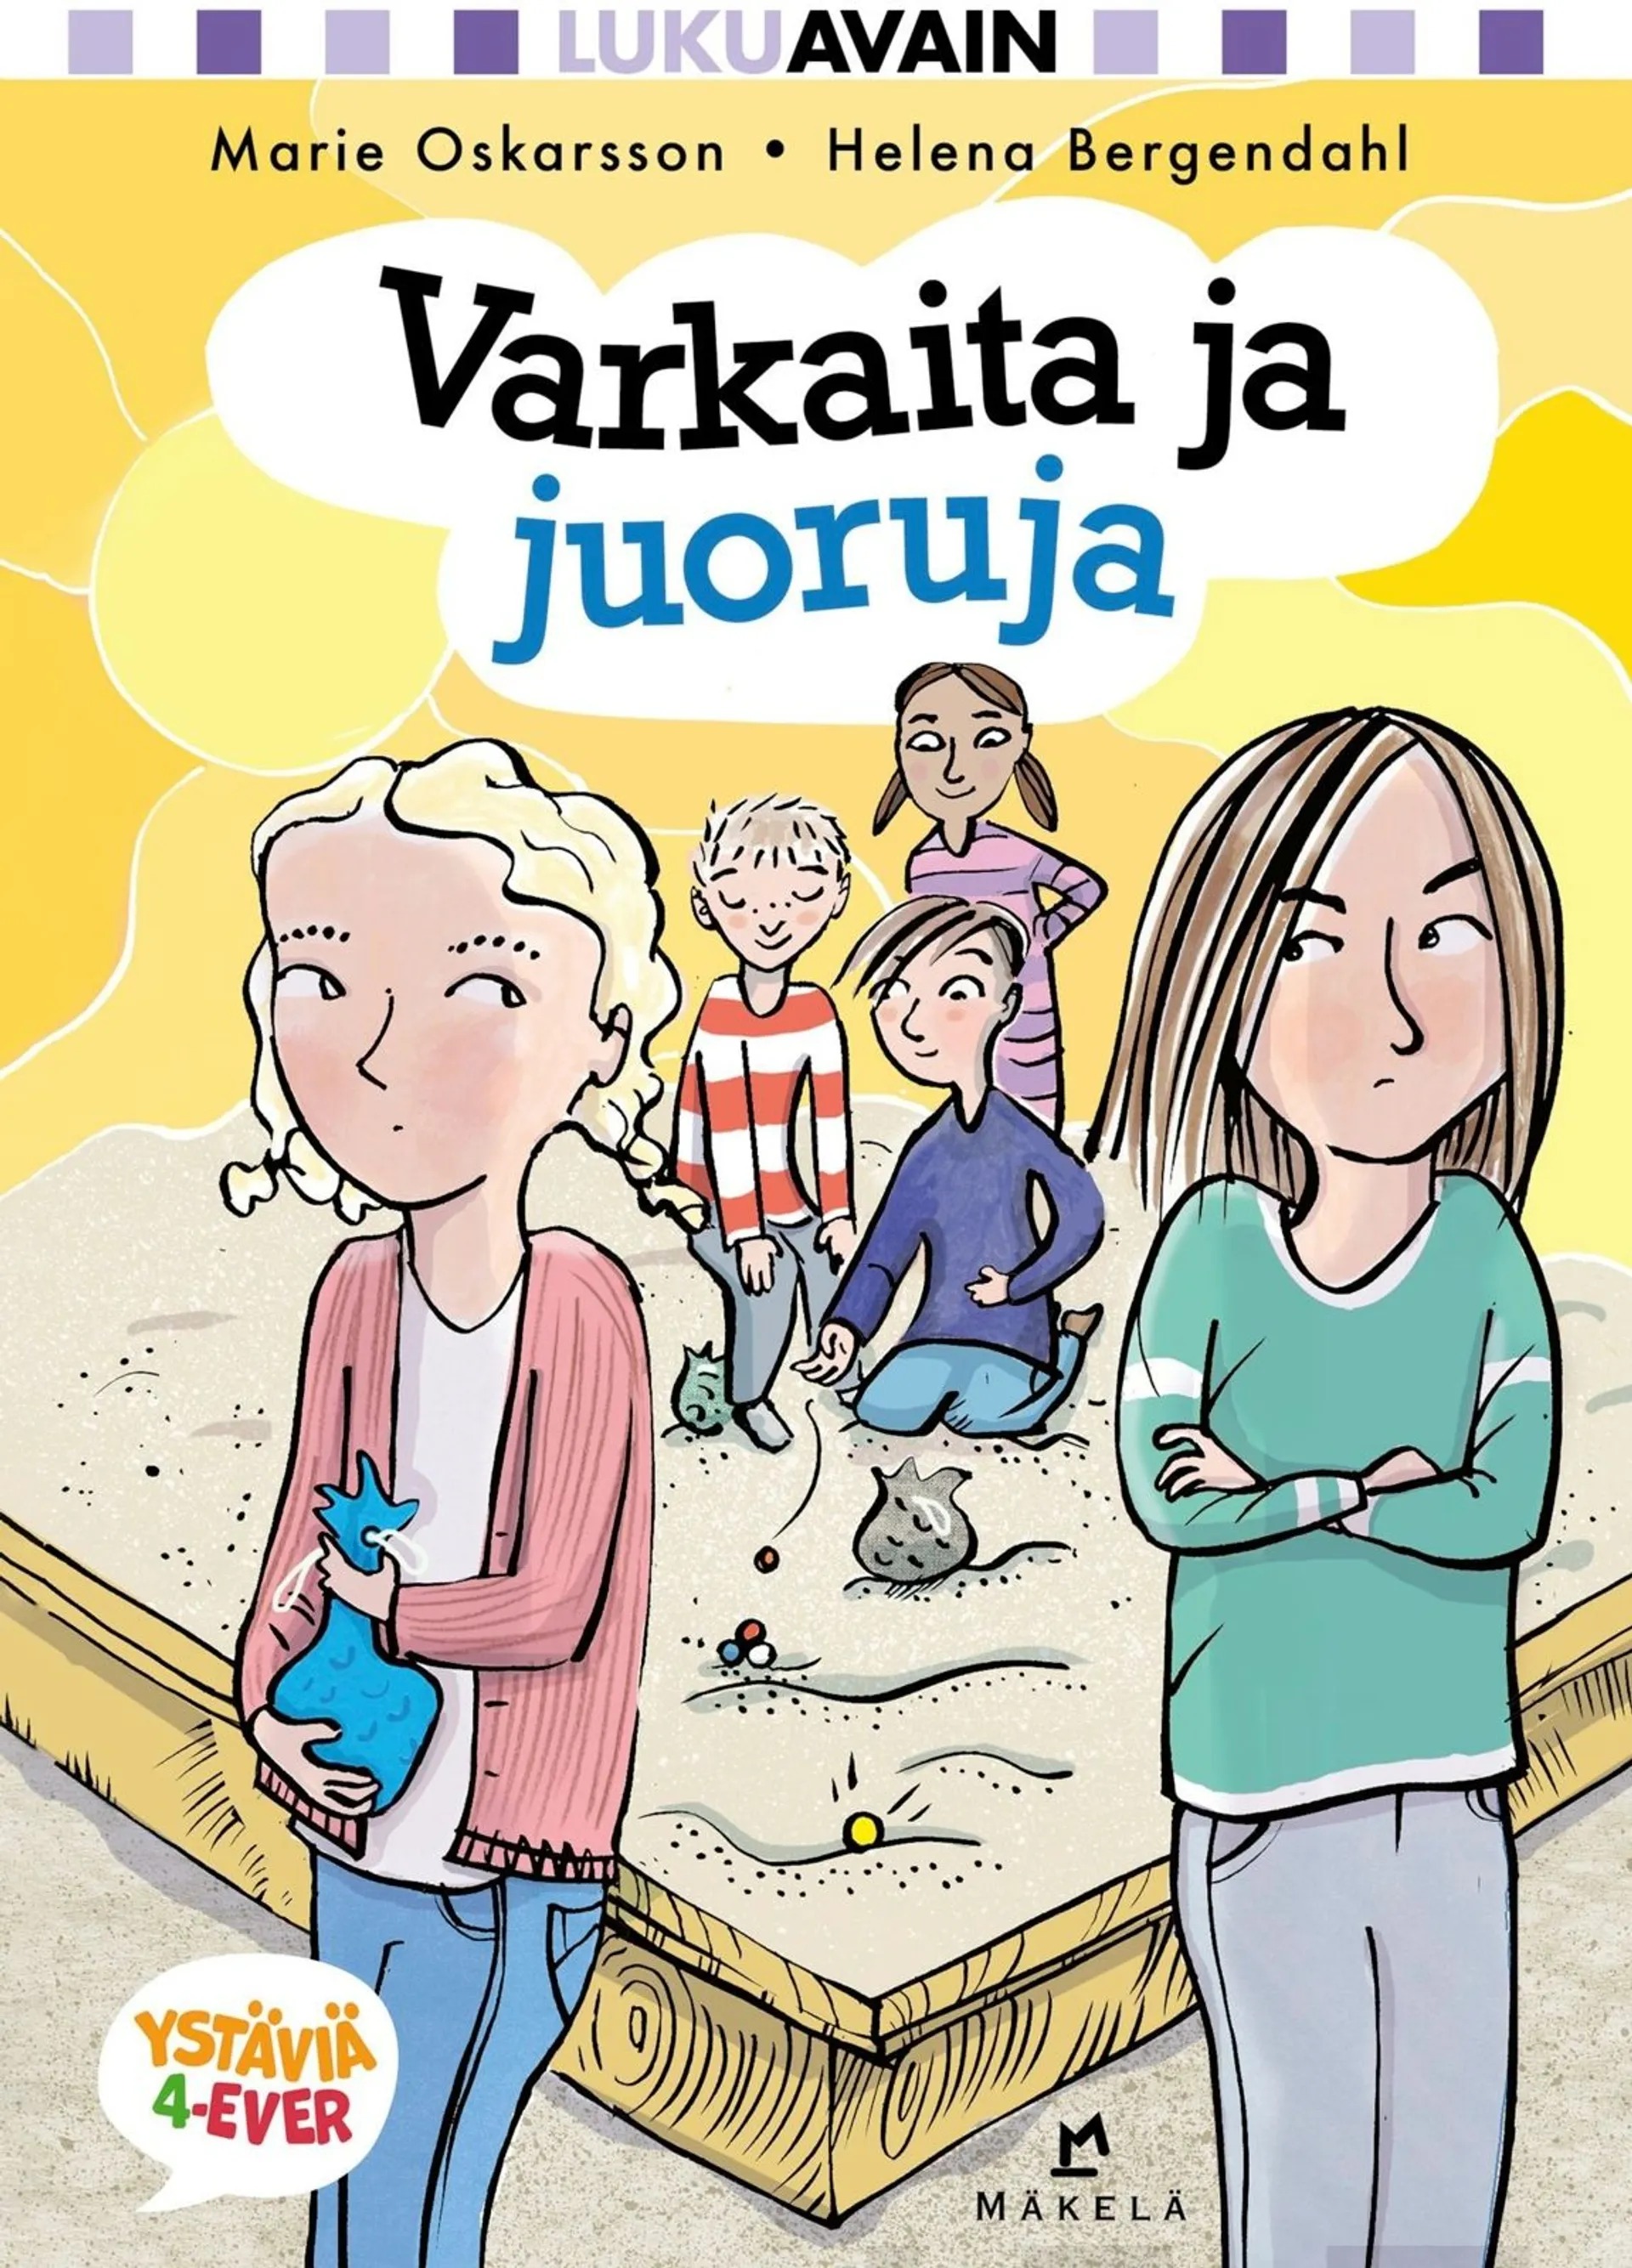 Oskarsson, Varkaita ja juoruja - Lätt att läsa, Vänner 4-ever